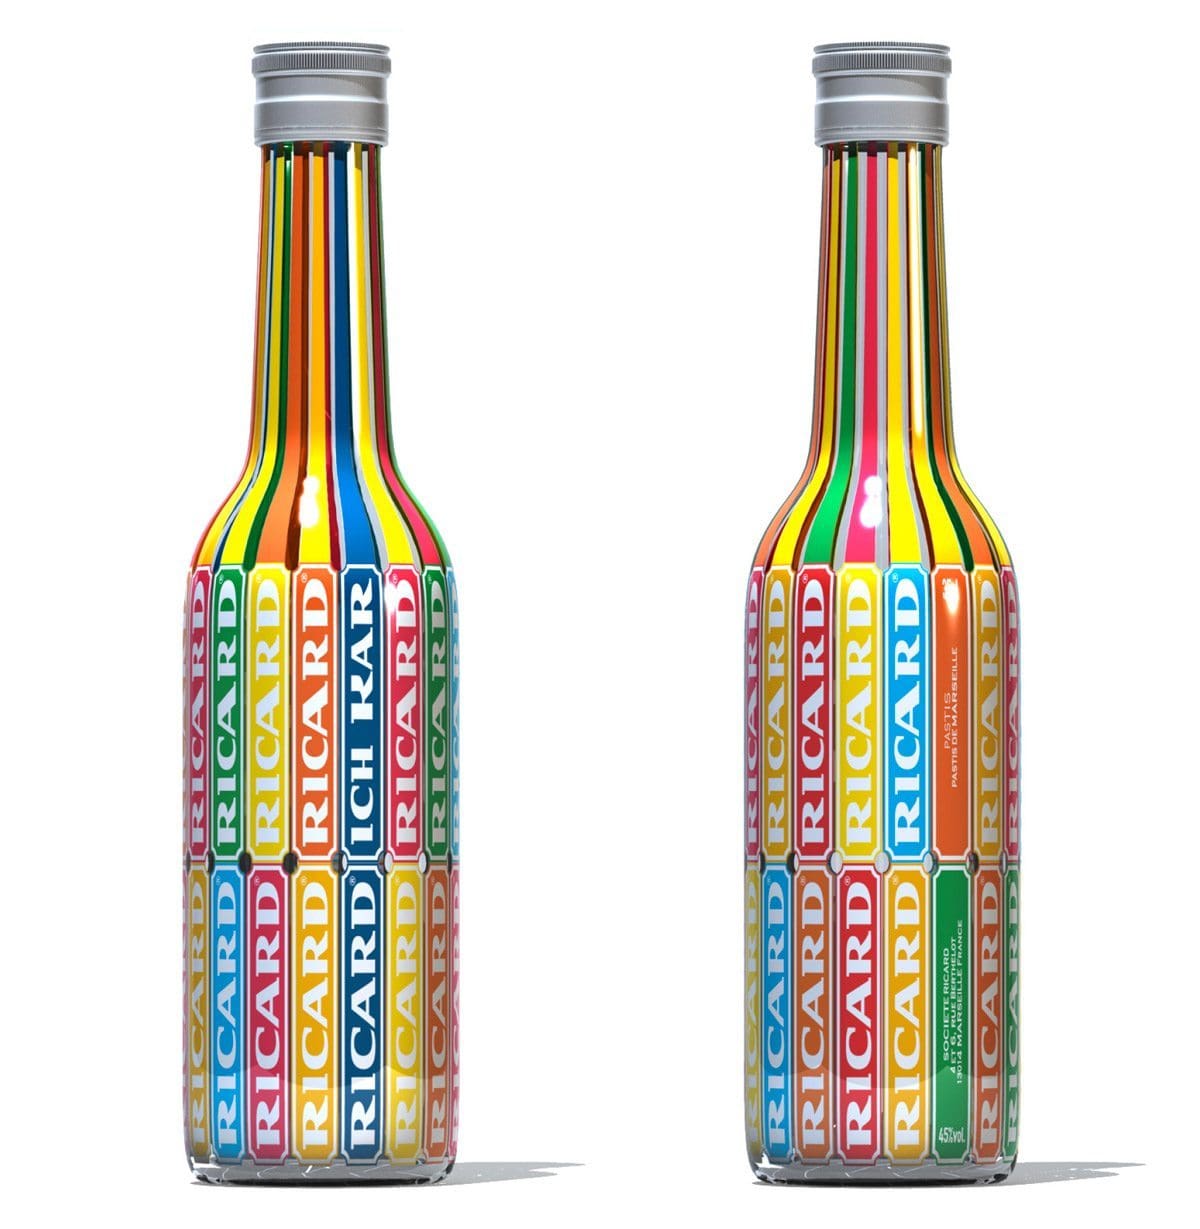 La collaboration entre IchetKar et Ricard, une bouteille colorée à l'allure pop